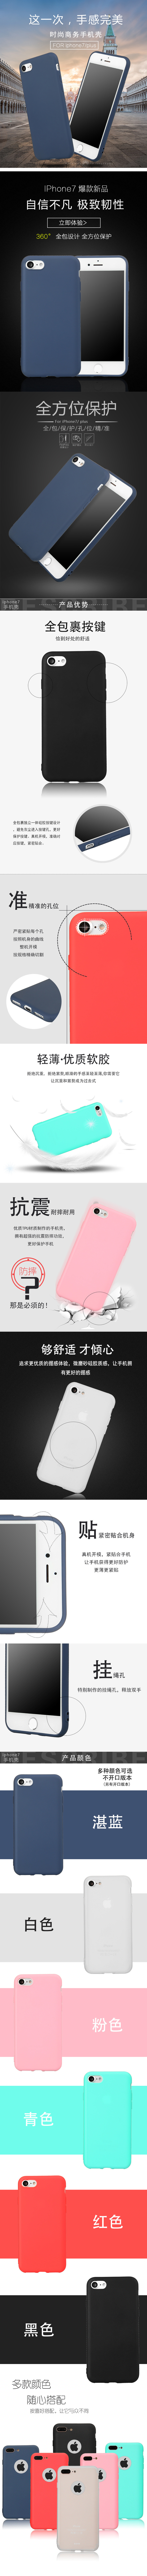 淘宝美工占占iPhone7/plus 磨砂手机壳 保护壳作品